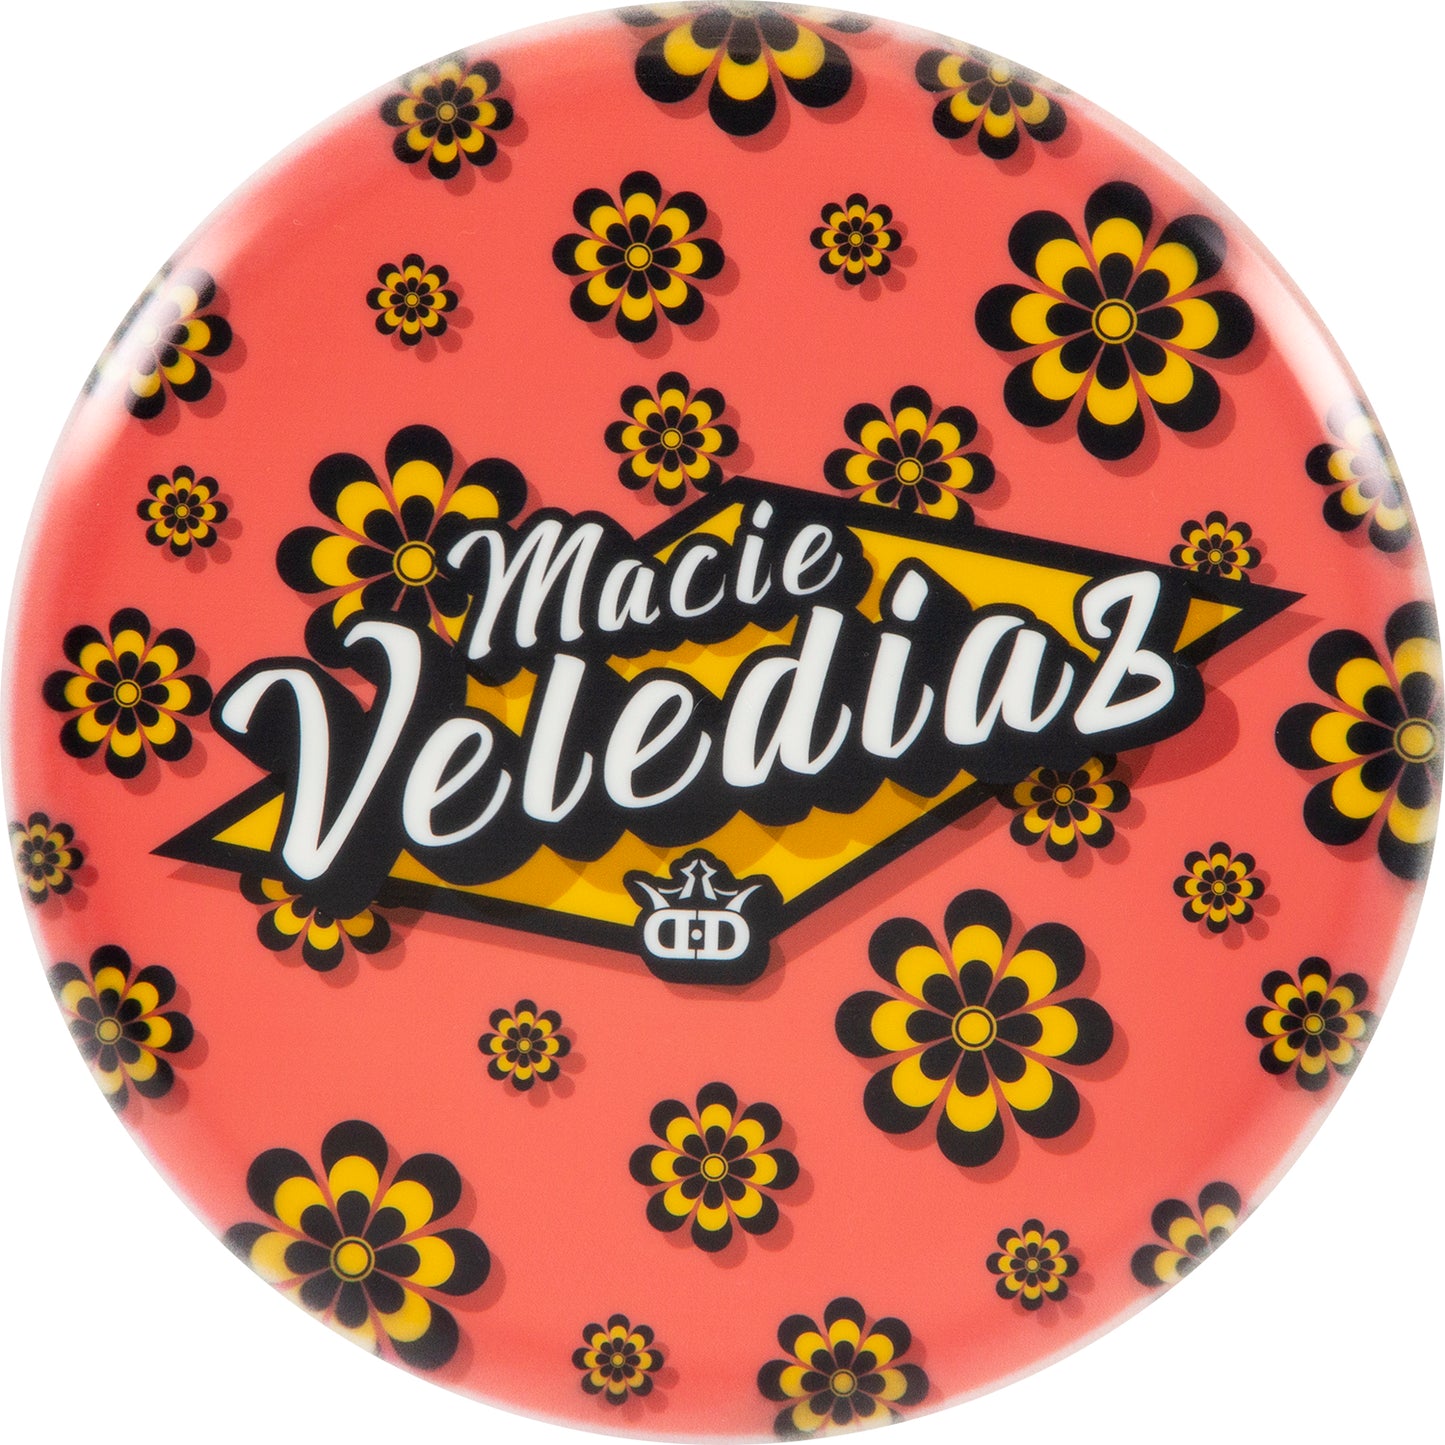 Dynamic Discs Macie Velediaz Flower Power DyeMax